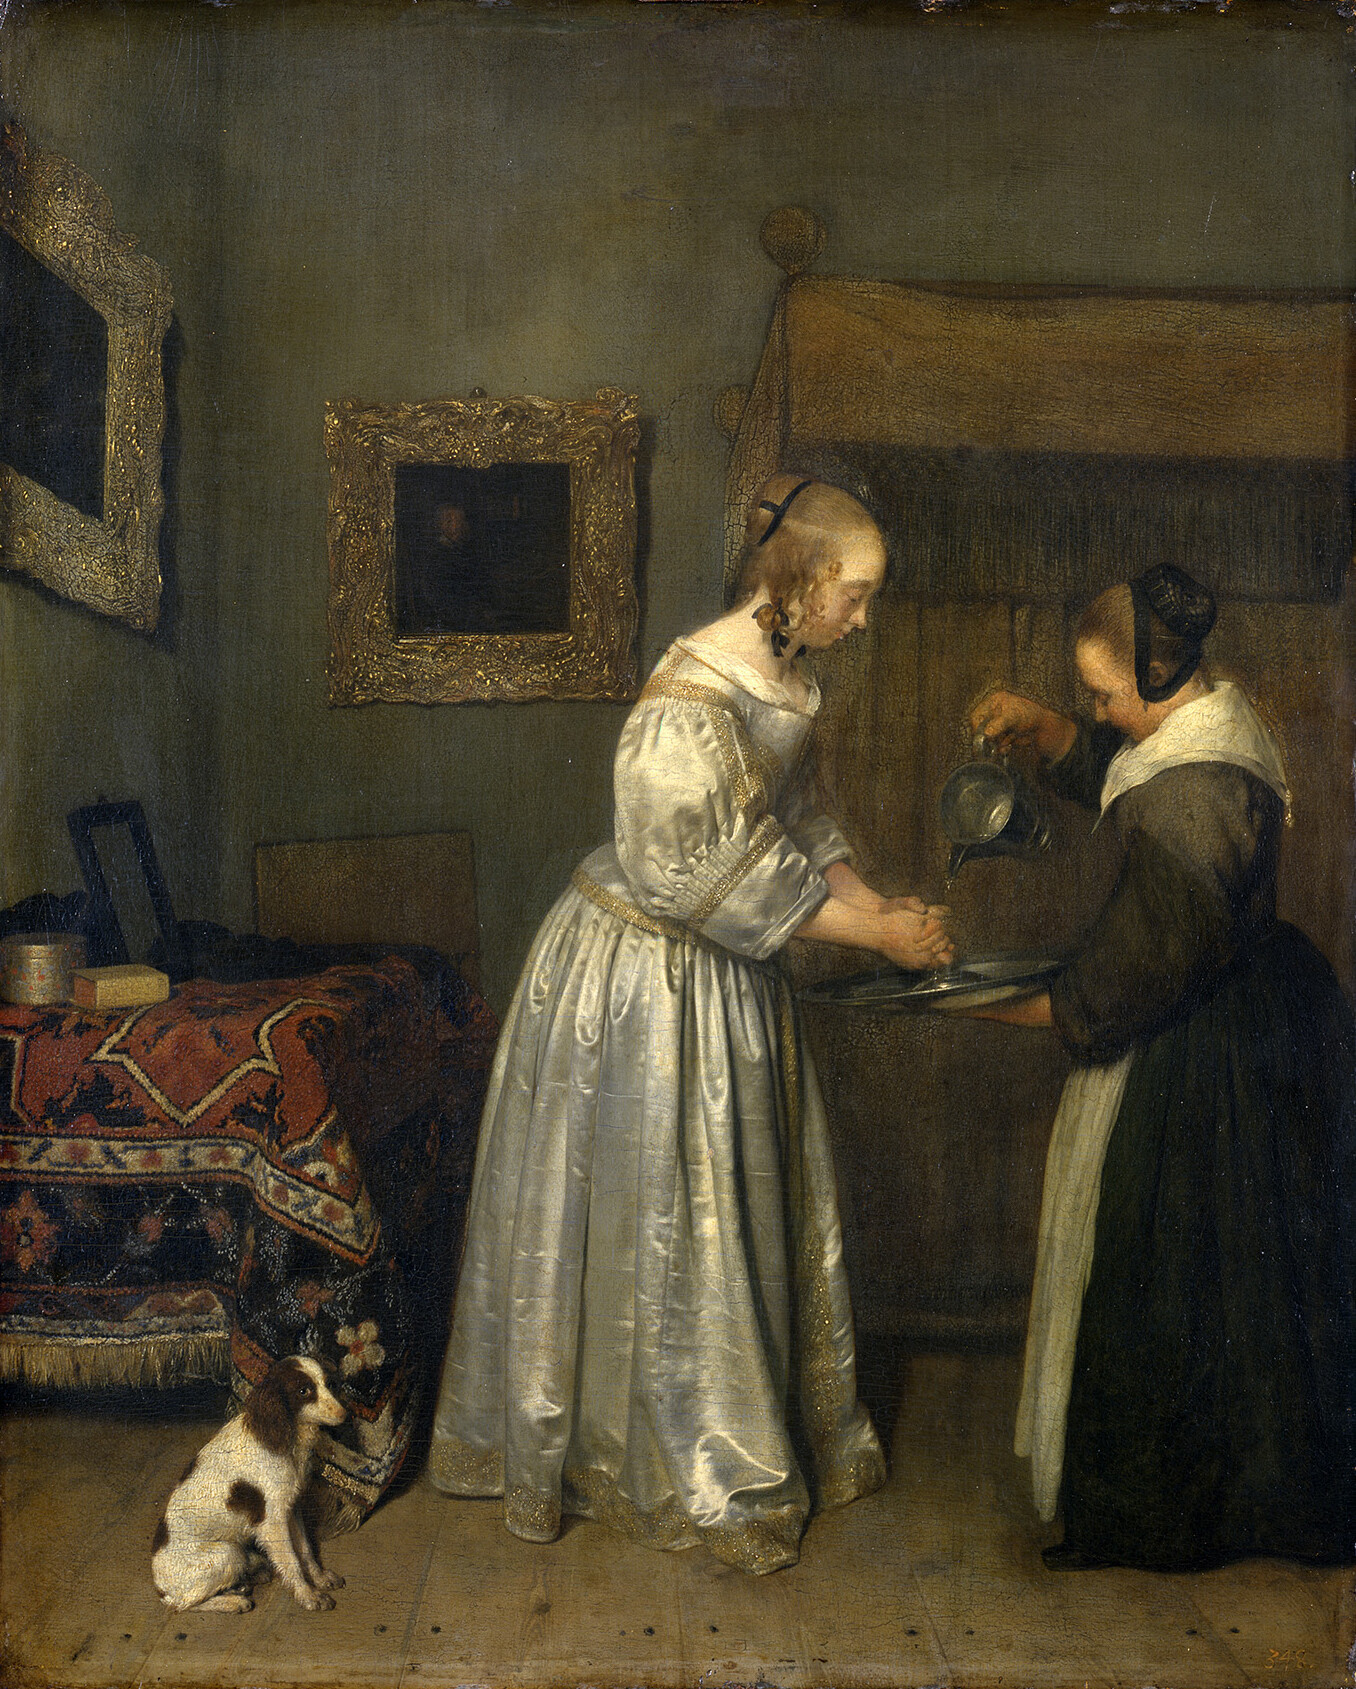 ヘラルト・テル・ボルフ 「手を洗う女」 1655-56年頃 ドレスデン国立古典絵画館